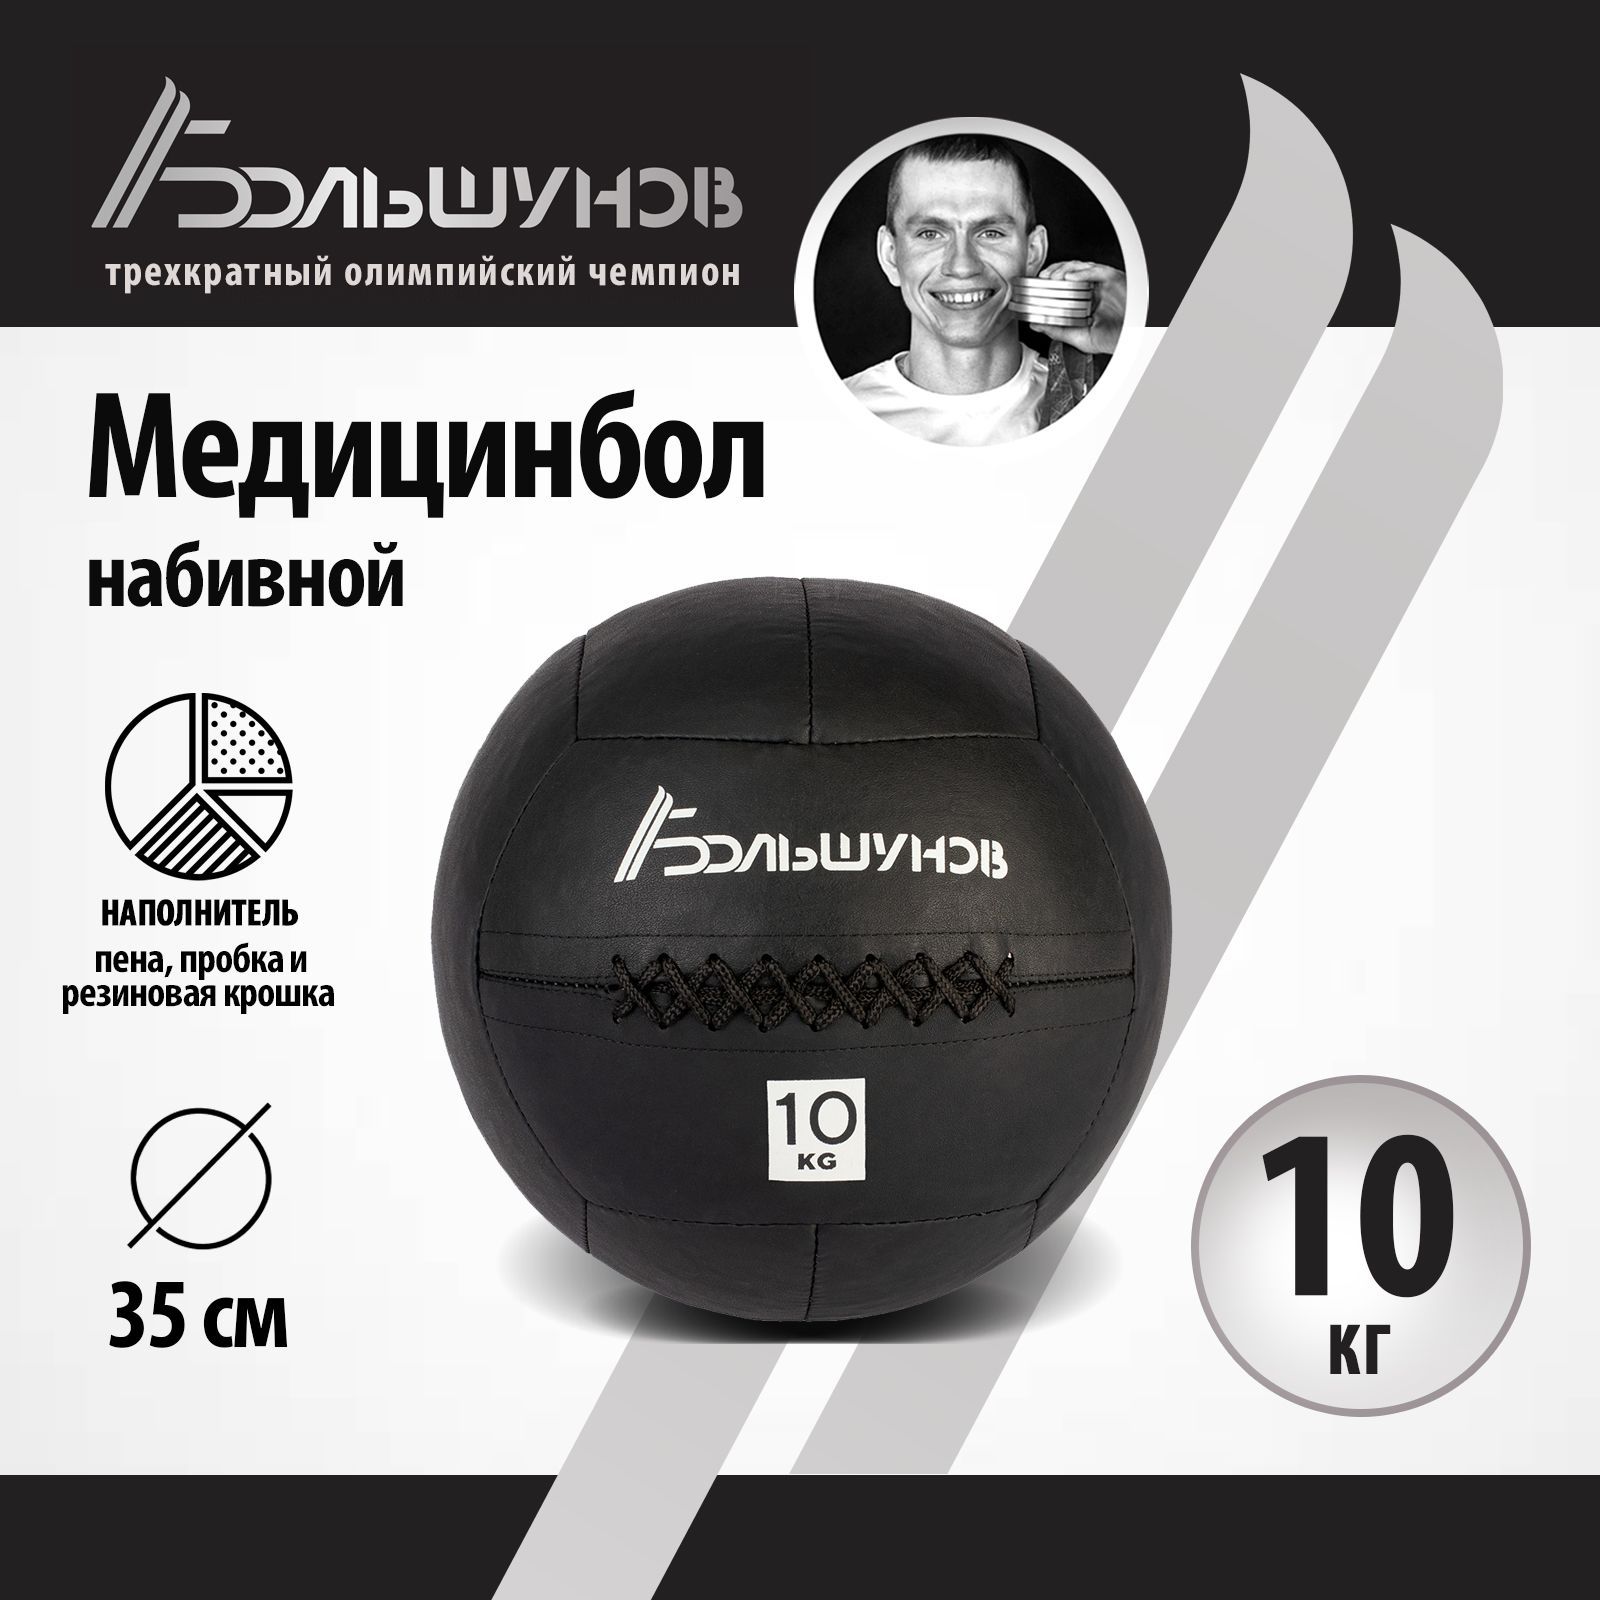 Медбол Александр Большунов, 35см, 10 кг